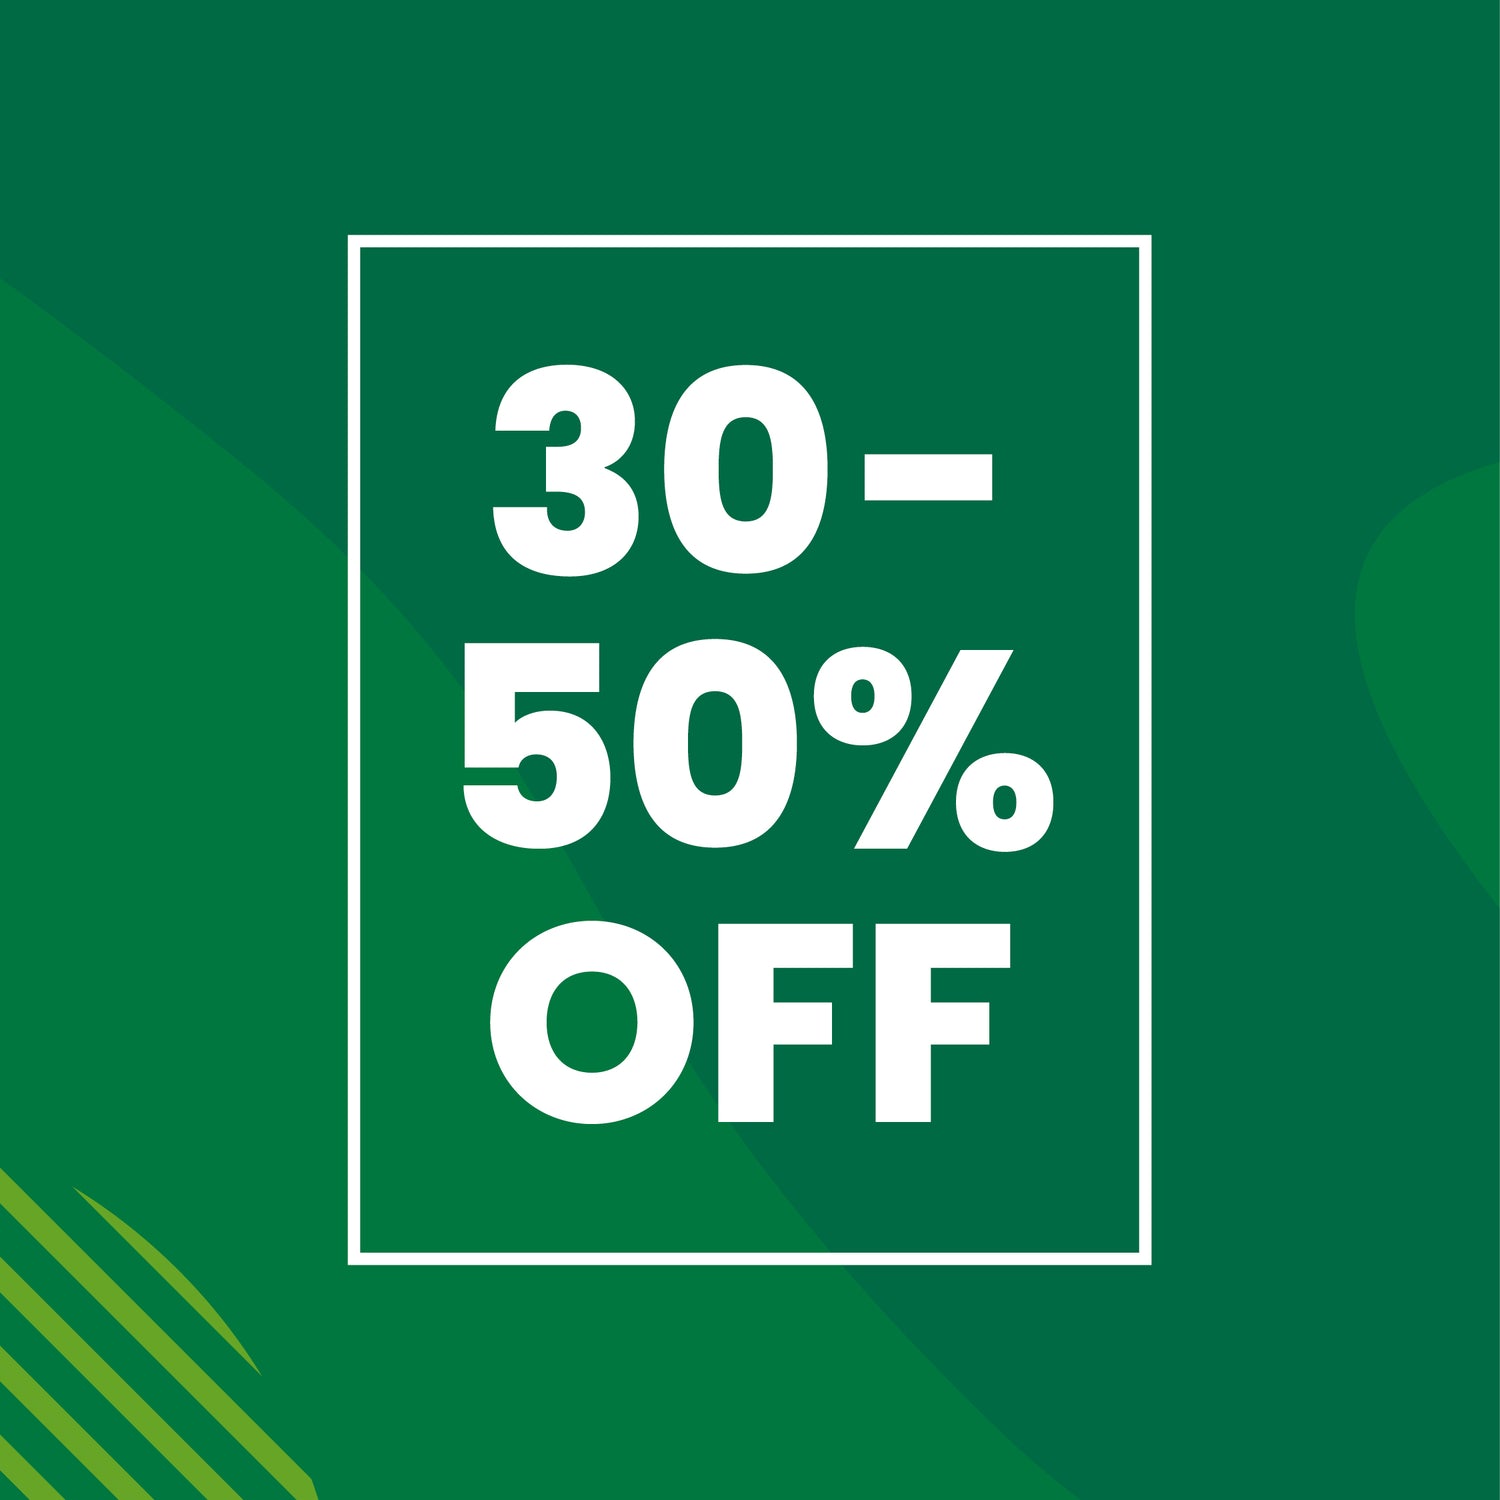 EOFY Sale 30 - 50% off